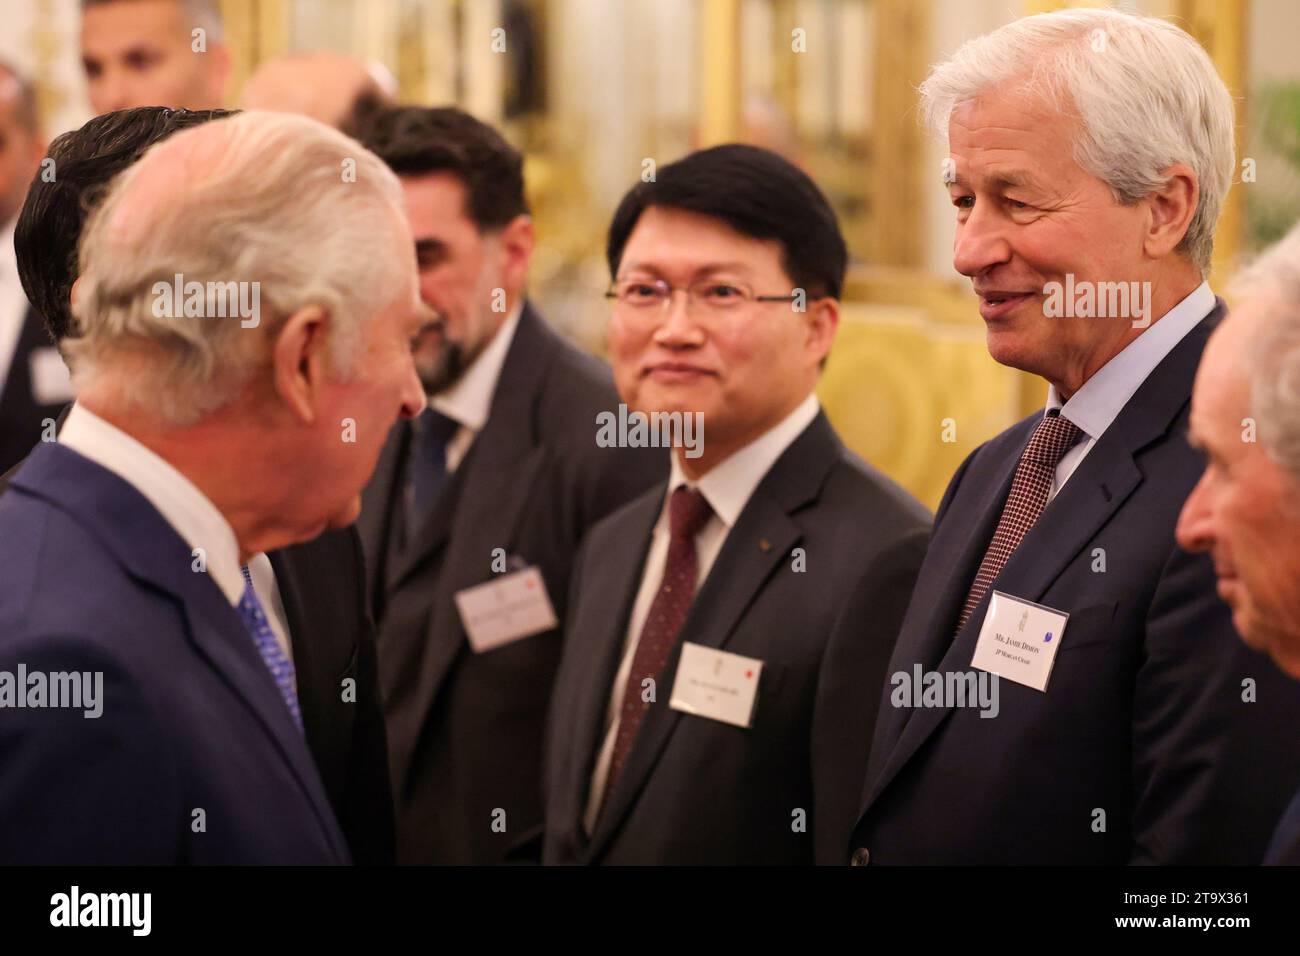 König Charles III. (Links) spricht mit Jamie Dimon, CEO von JPMorgan Chase (zweite rechts), während eines Empfangs im Londoner Buckingham Palace anlässlich des Global Investment Summit 2023. Bilddatum: Montag, 27. November 2023. Stockfoto